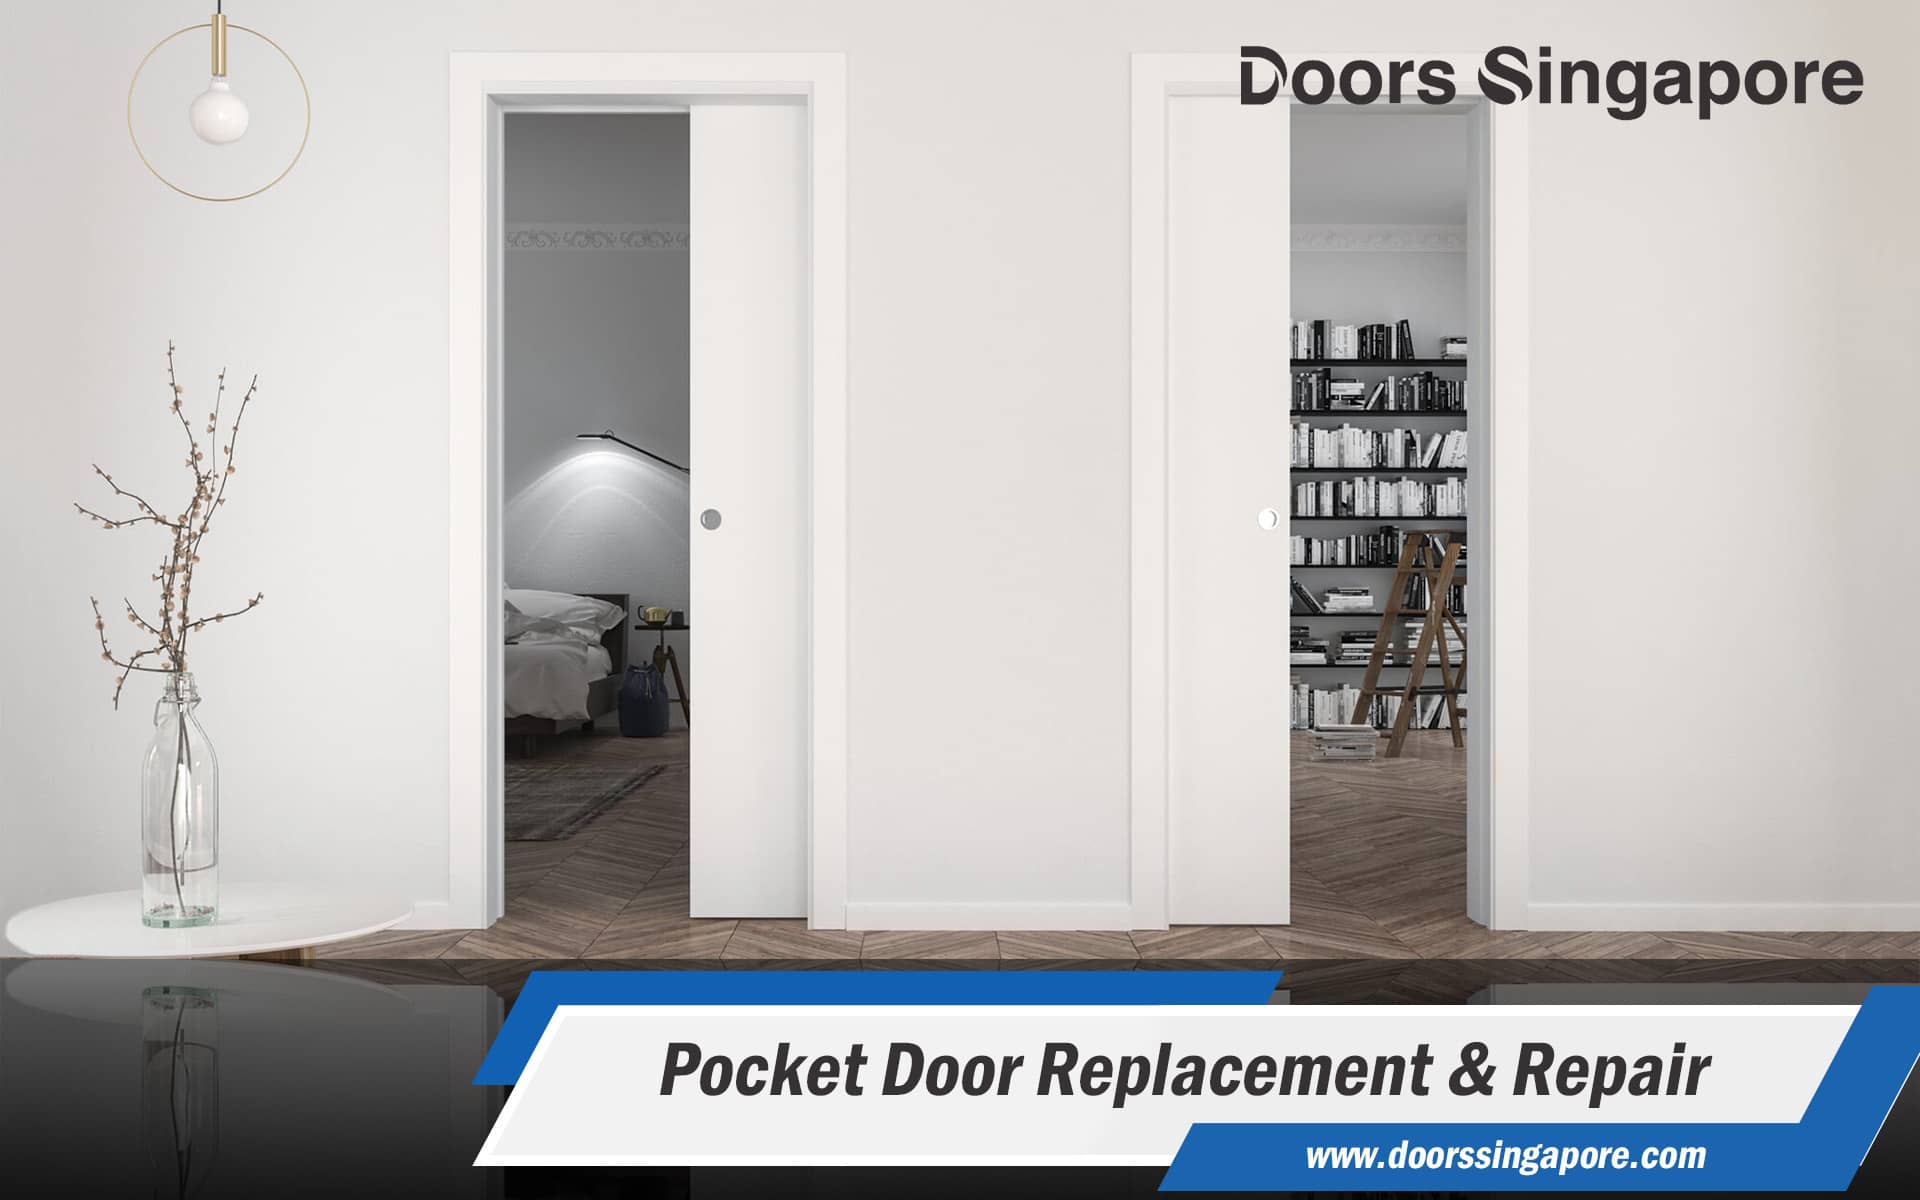 Pocket Door Replacement & Repair